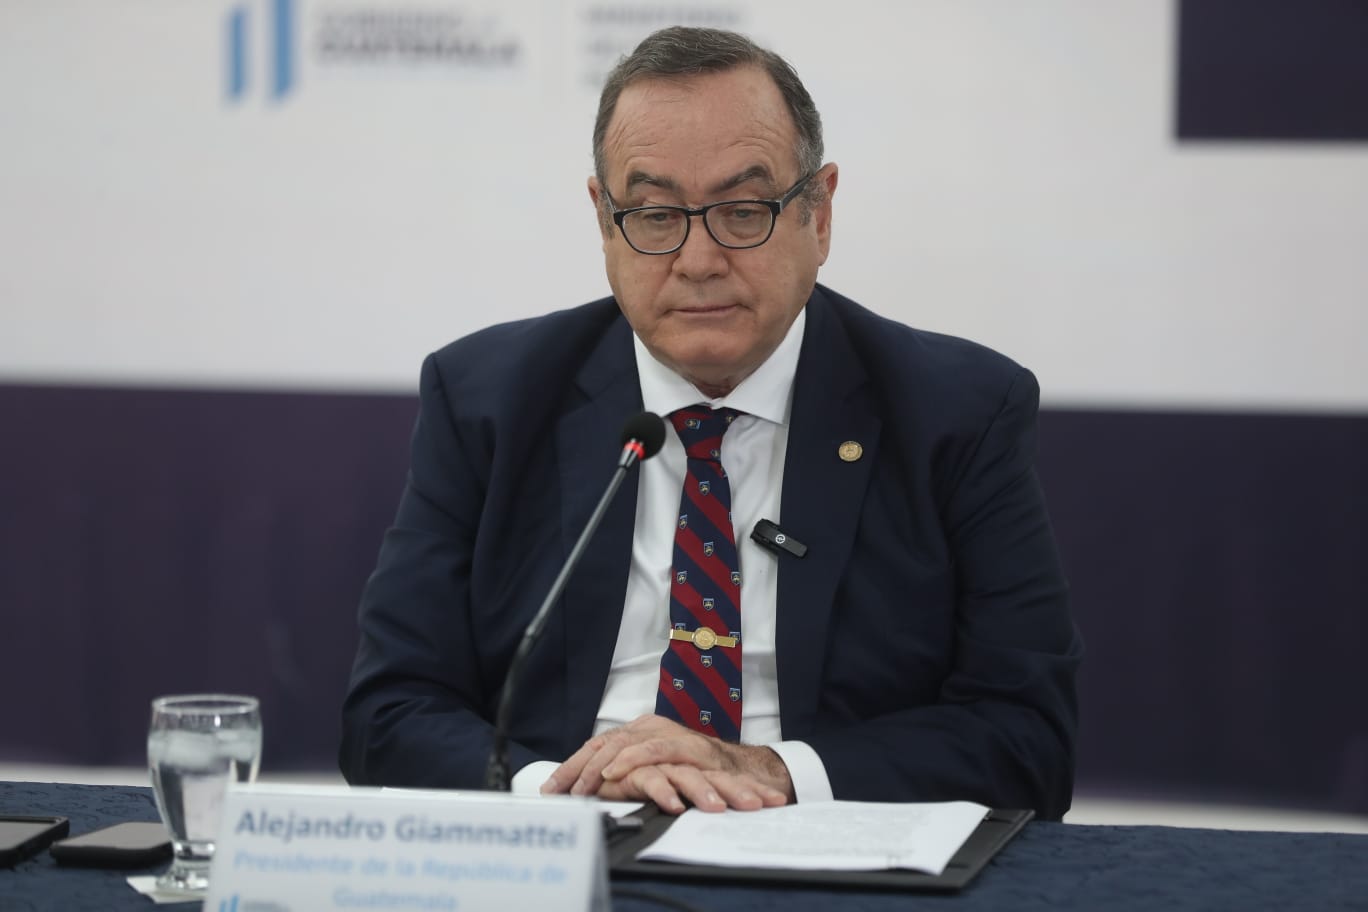 El presidente Alejandro Giammattei habló una vez más sobre su estado de salud, luego de los rumores de que se sometió a un supuesto trasplante. (Foto Prensa Libre: Juan Diego González)